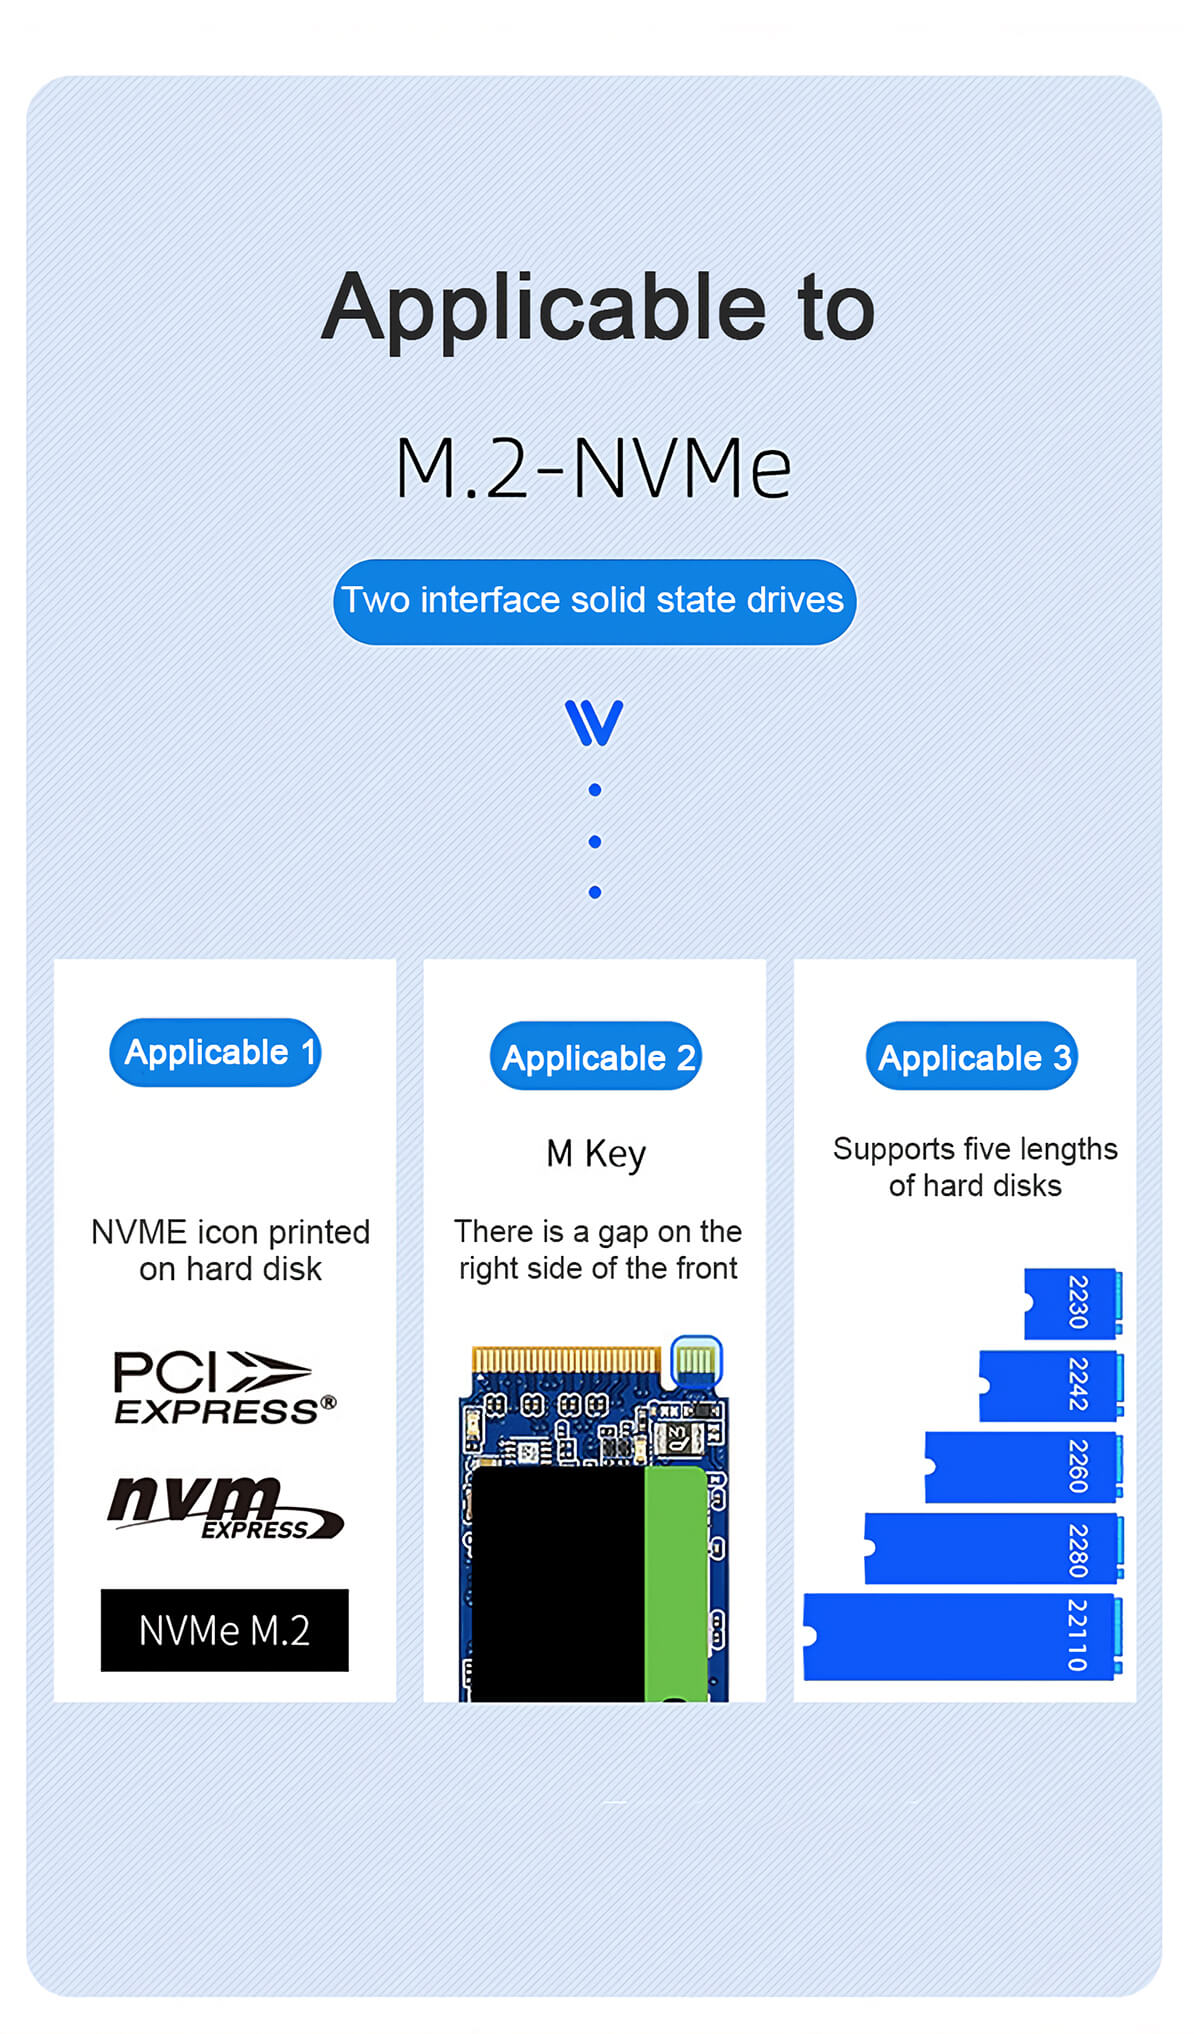 משכפל דיסקים NVMe חיבור USB-C מהירות העתקה עד Rocketek ME922 1.2GBs 